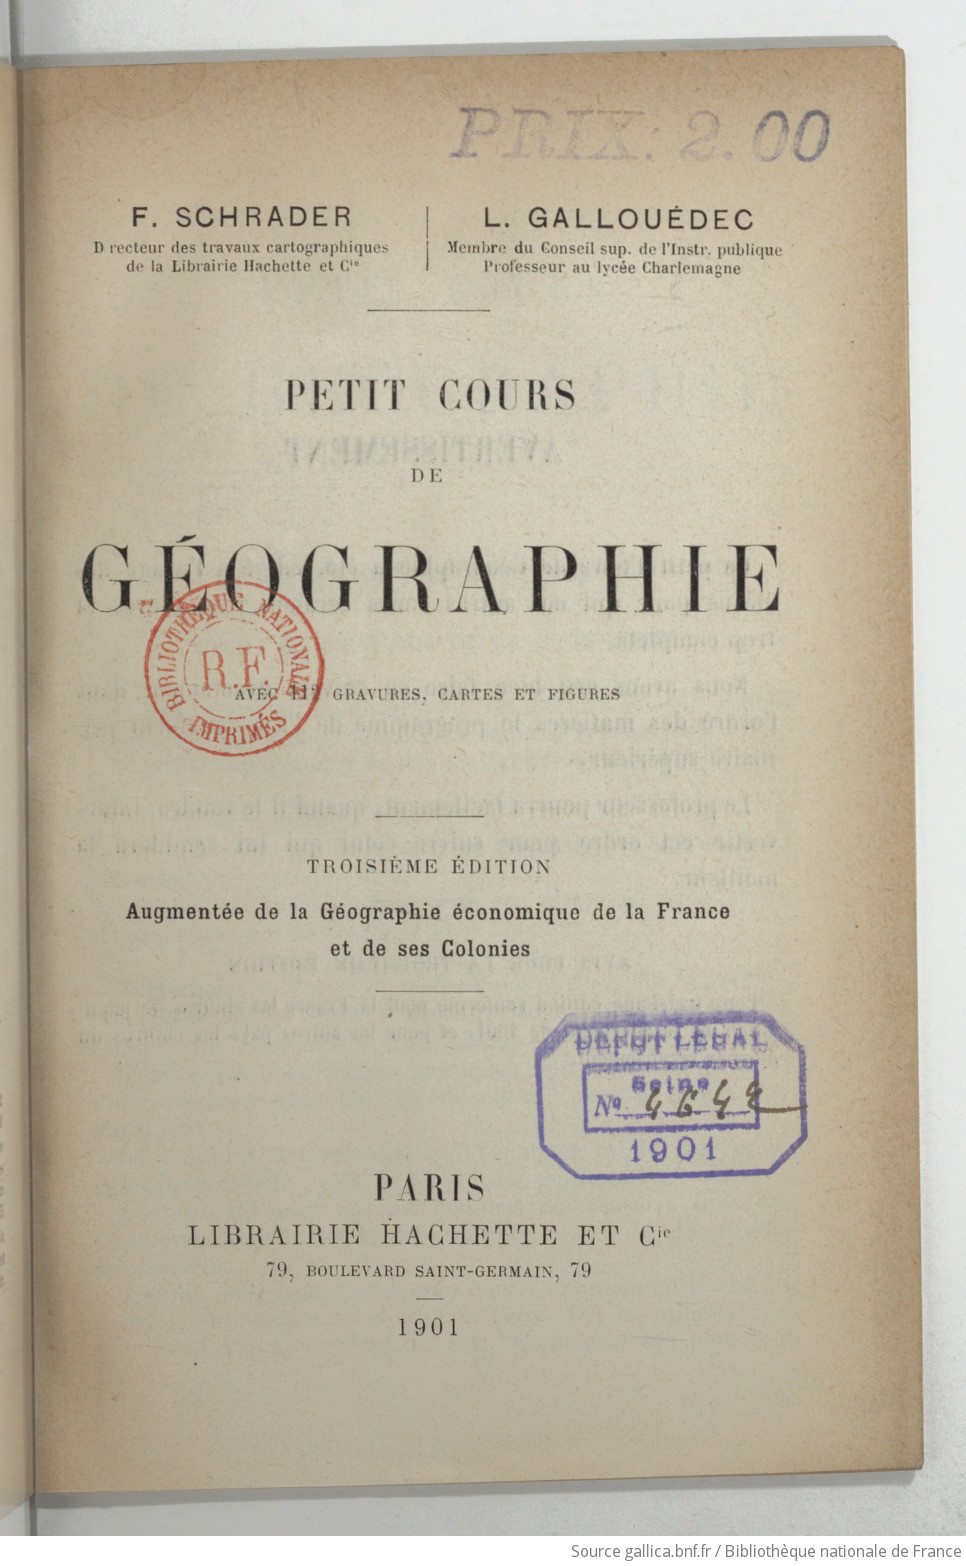 Petit cours de géographie... (3e édition, augmentée de la géographie économique de la France et de ses colonies) / F. Schrader et L. Gallouédec